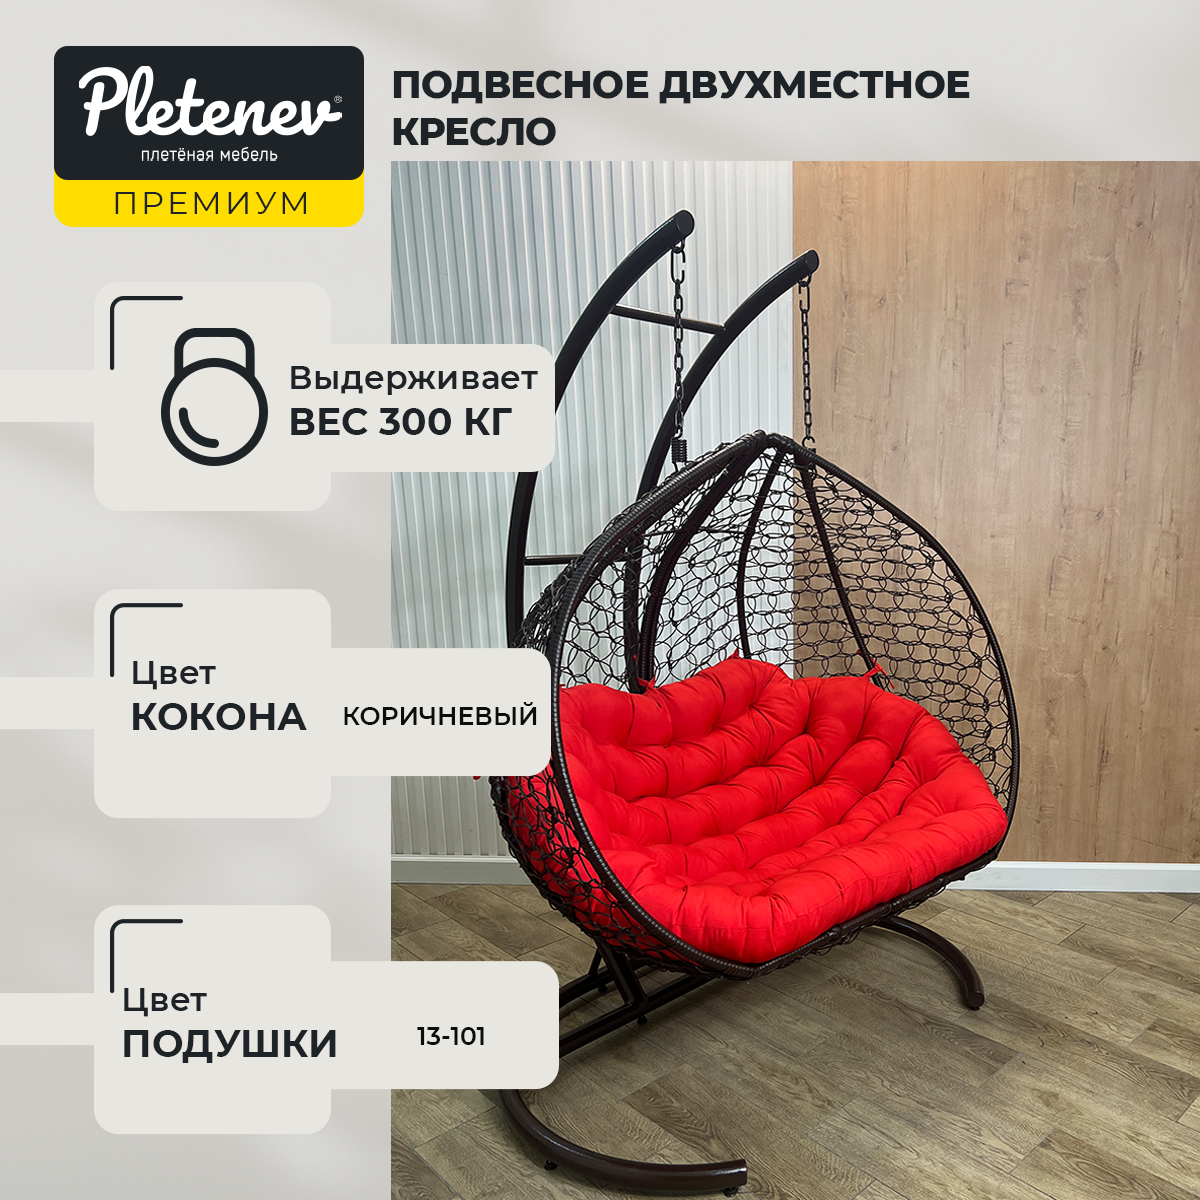 Подвесное кресло Pletenev "Двухместное"